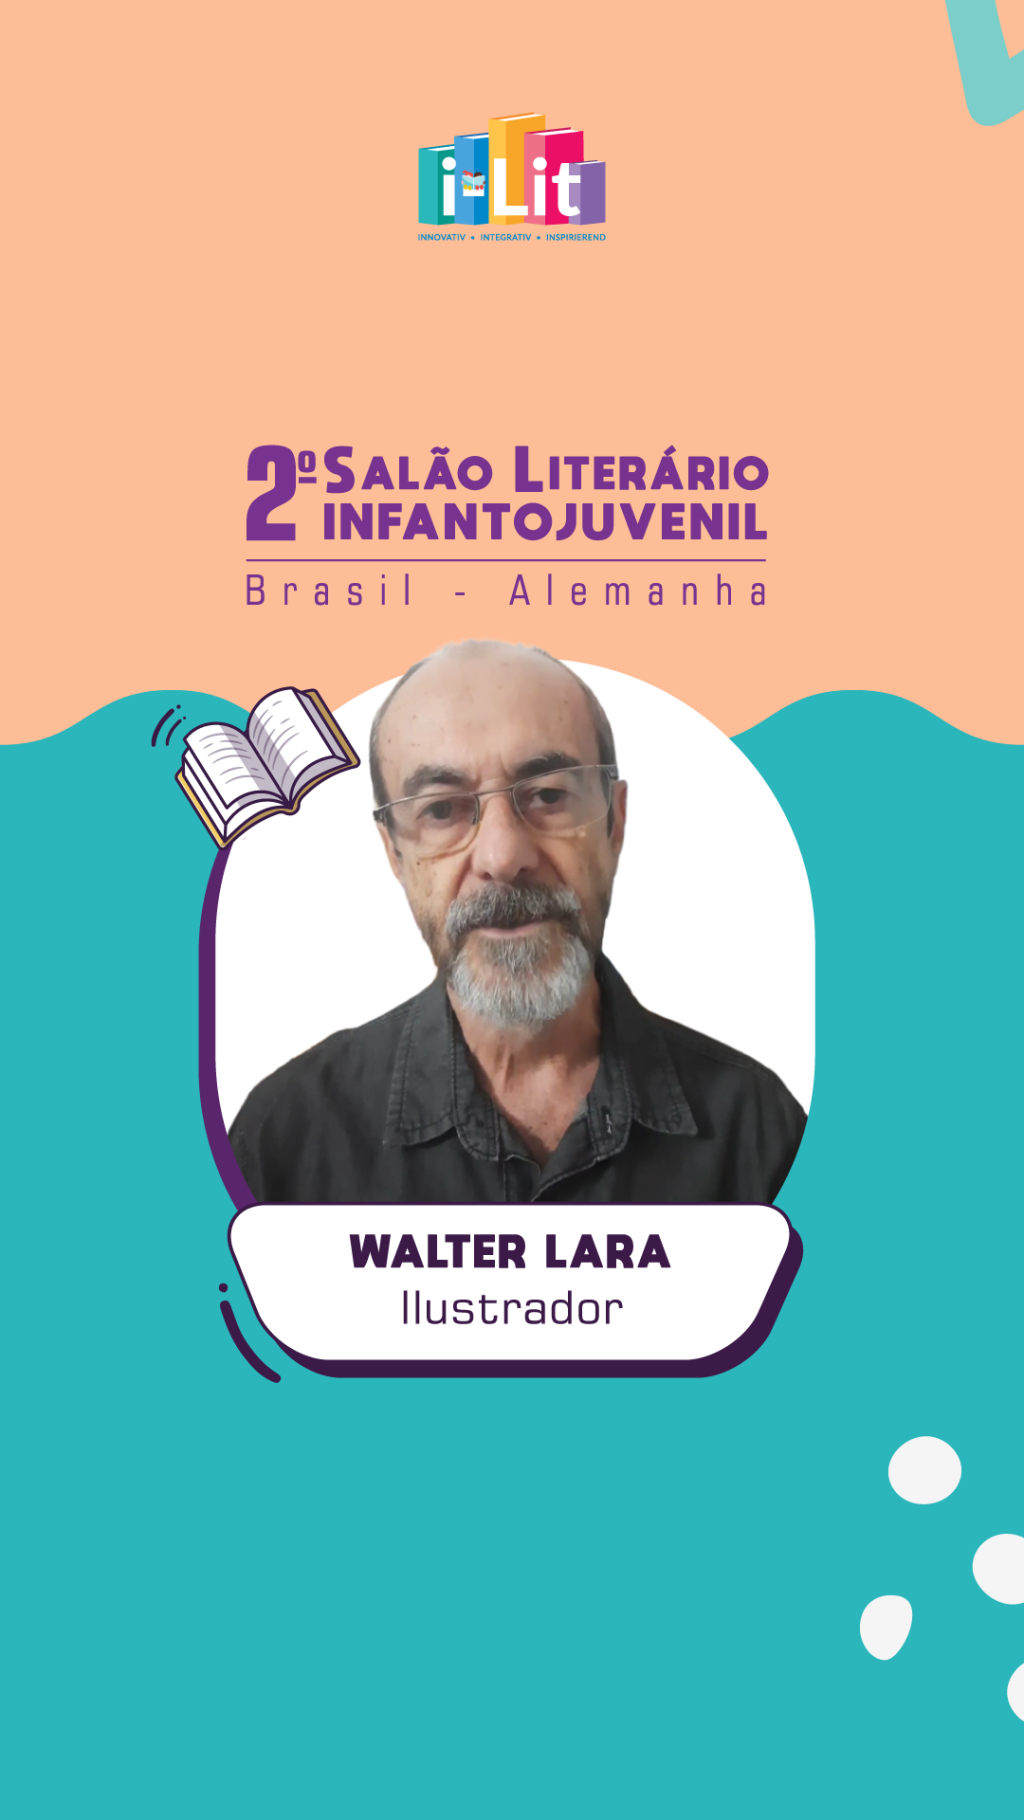 Confira o convite de Walter Lara, que terá suas obras expostas no 2º Salão Literário Infantojuvenil Brasil – Alemanha!